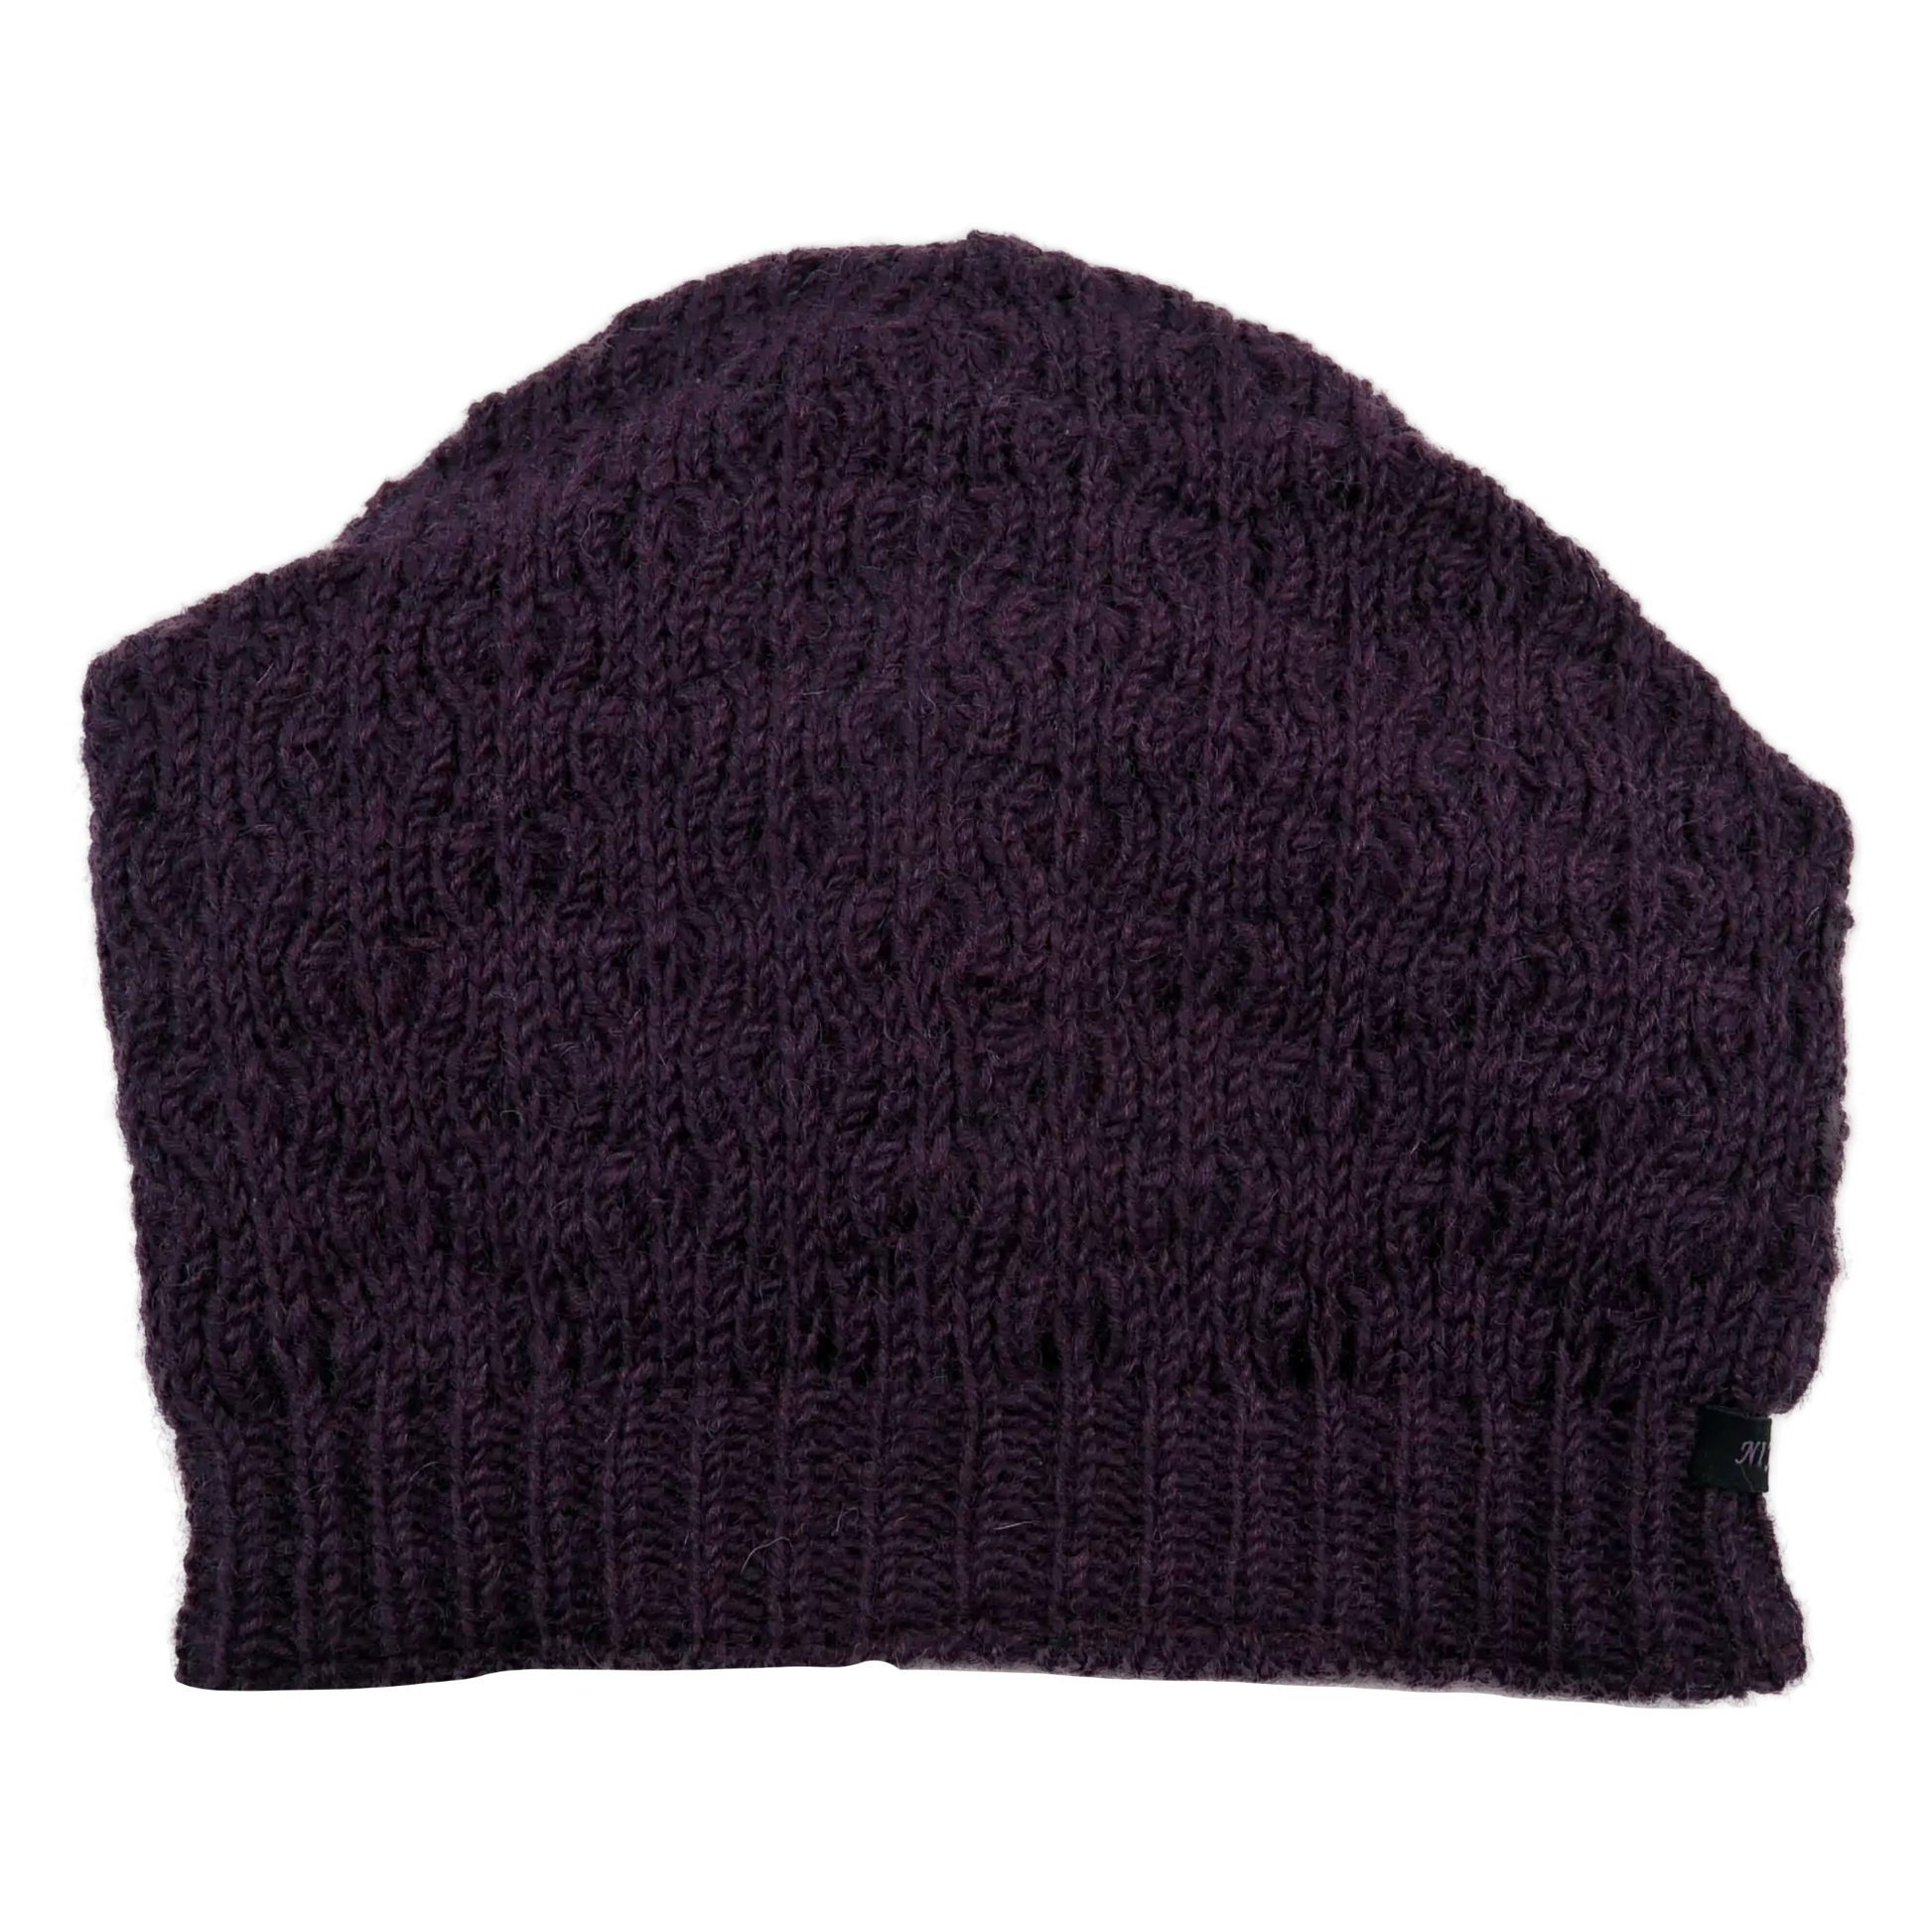 Long Beanie Mütze aus Schurwolle Violett  mit Strickmuster.